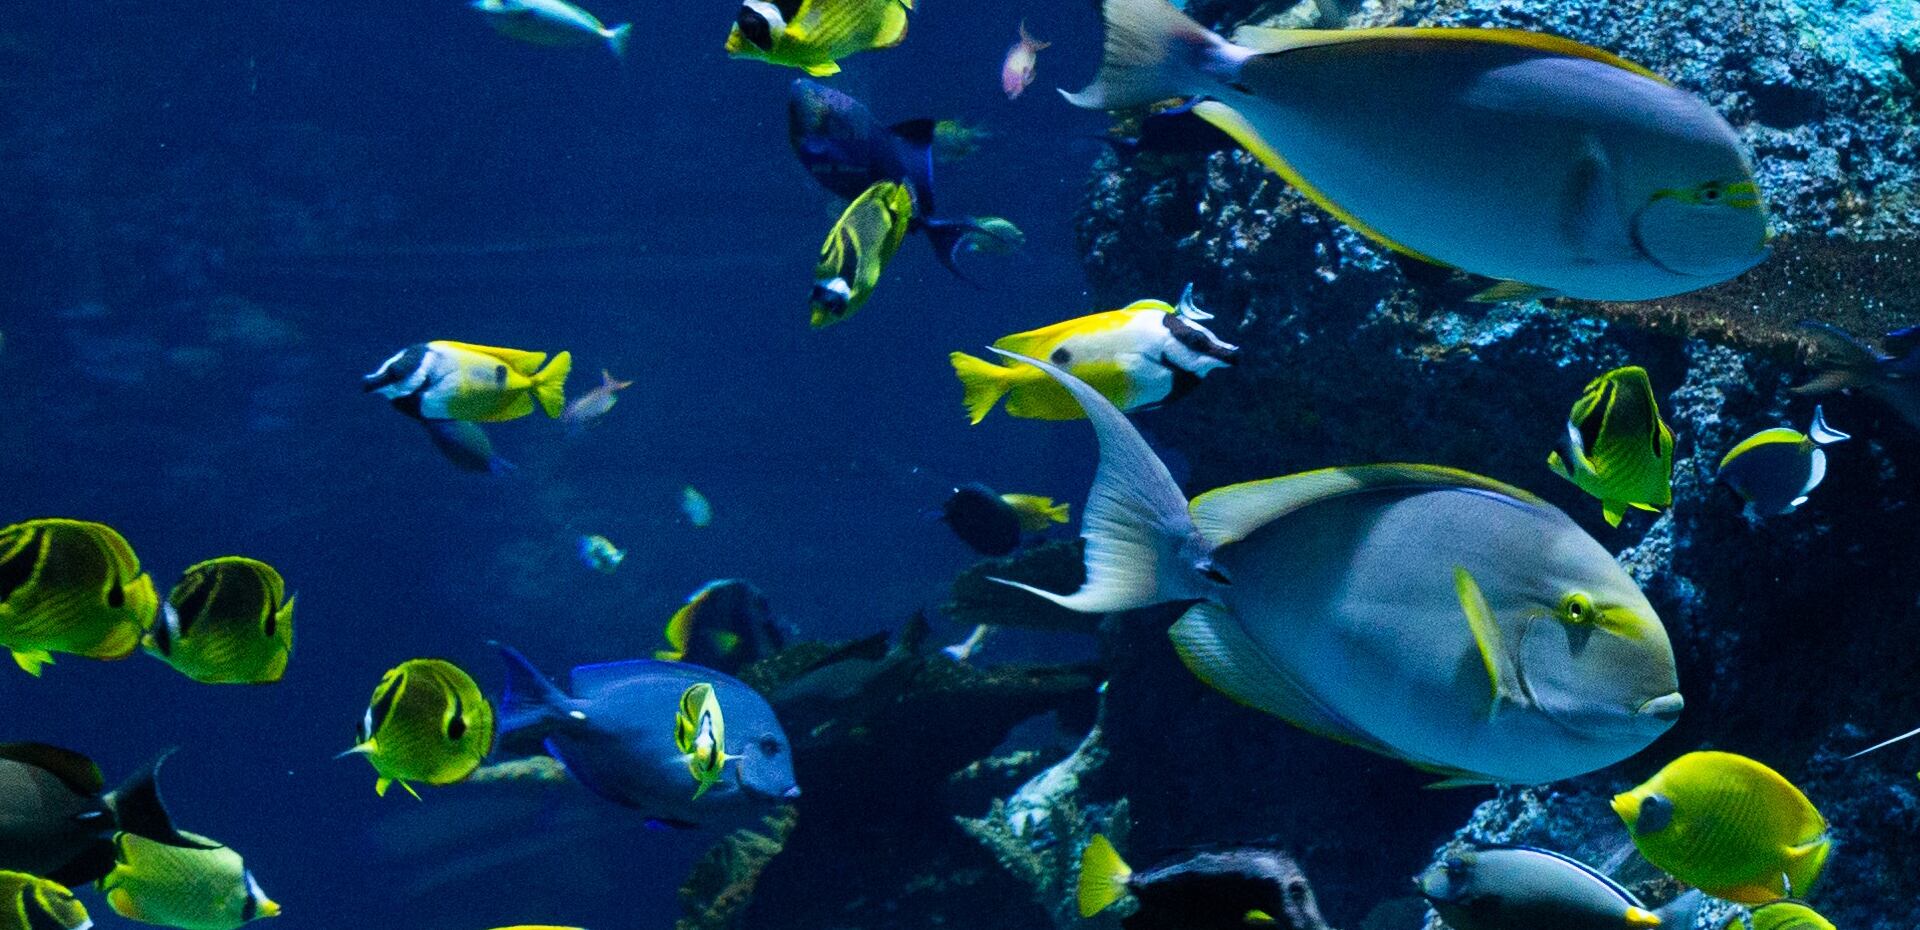 fish swim in a large aquarium